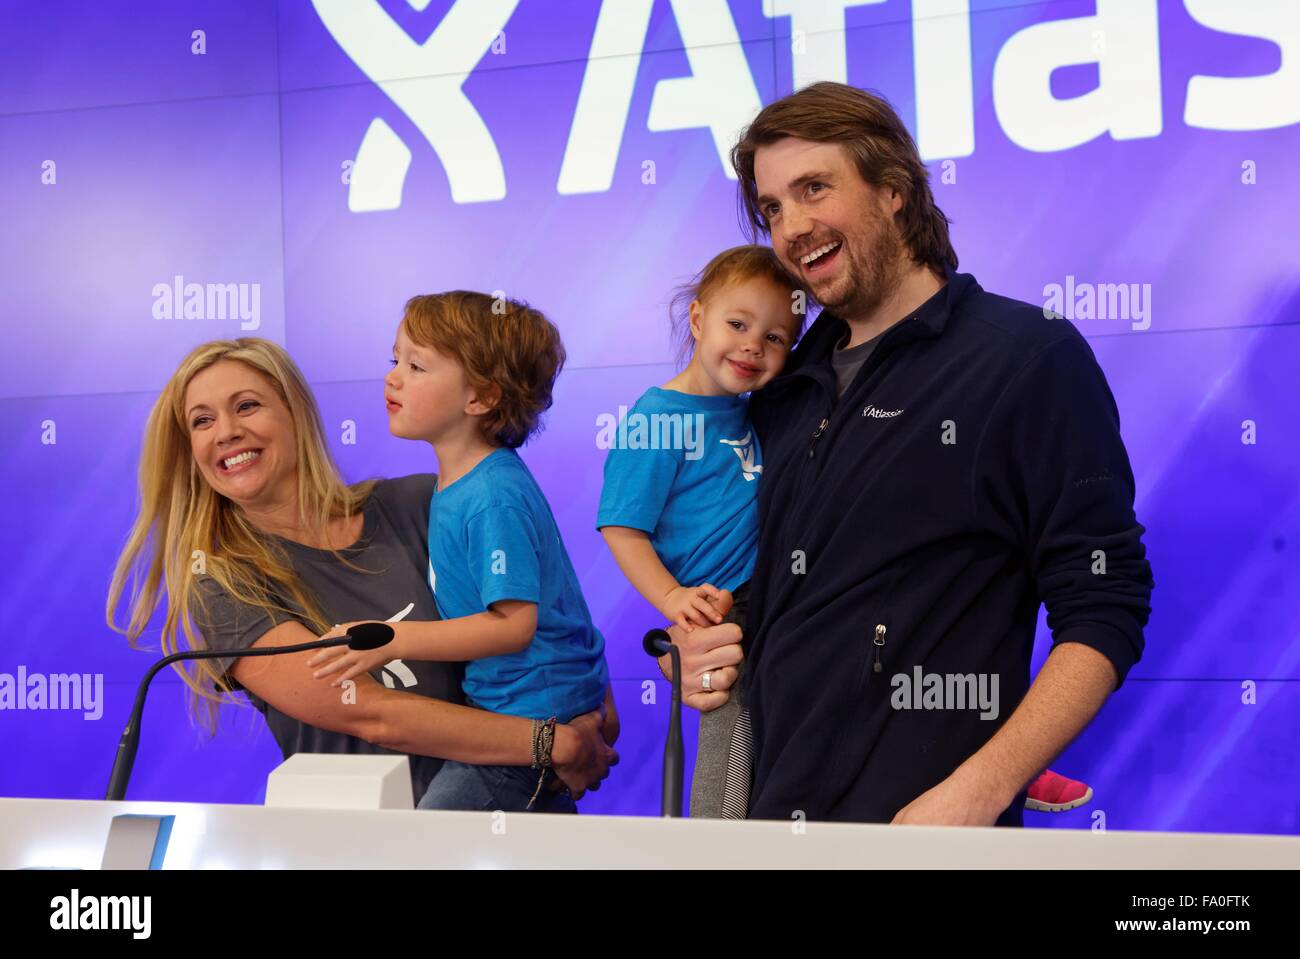 Nueva York, 10 de diciembre de 2015. Atlassian co-fundador Mike Cannon-Brookes con su familia durante la apertura de la ceremonia antes de timbre Foto de stock